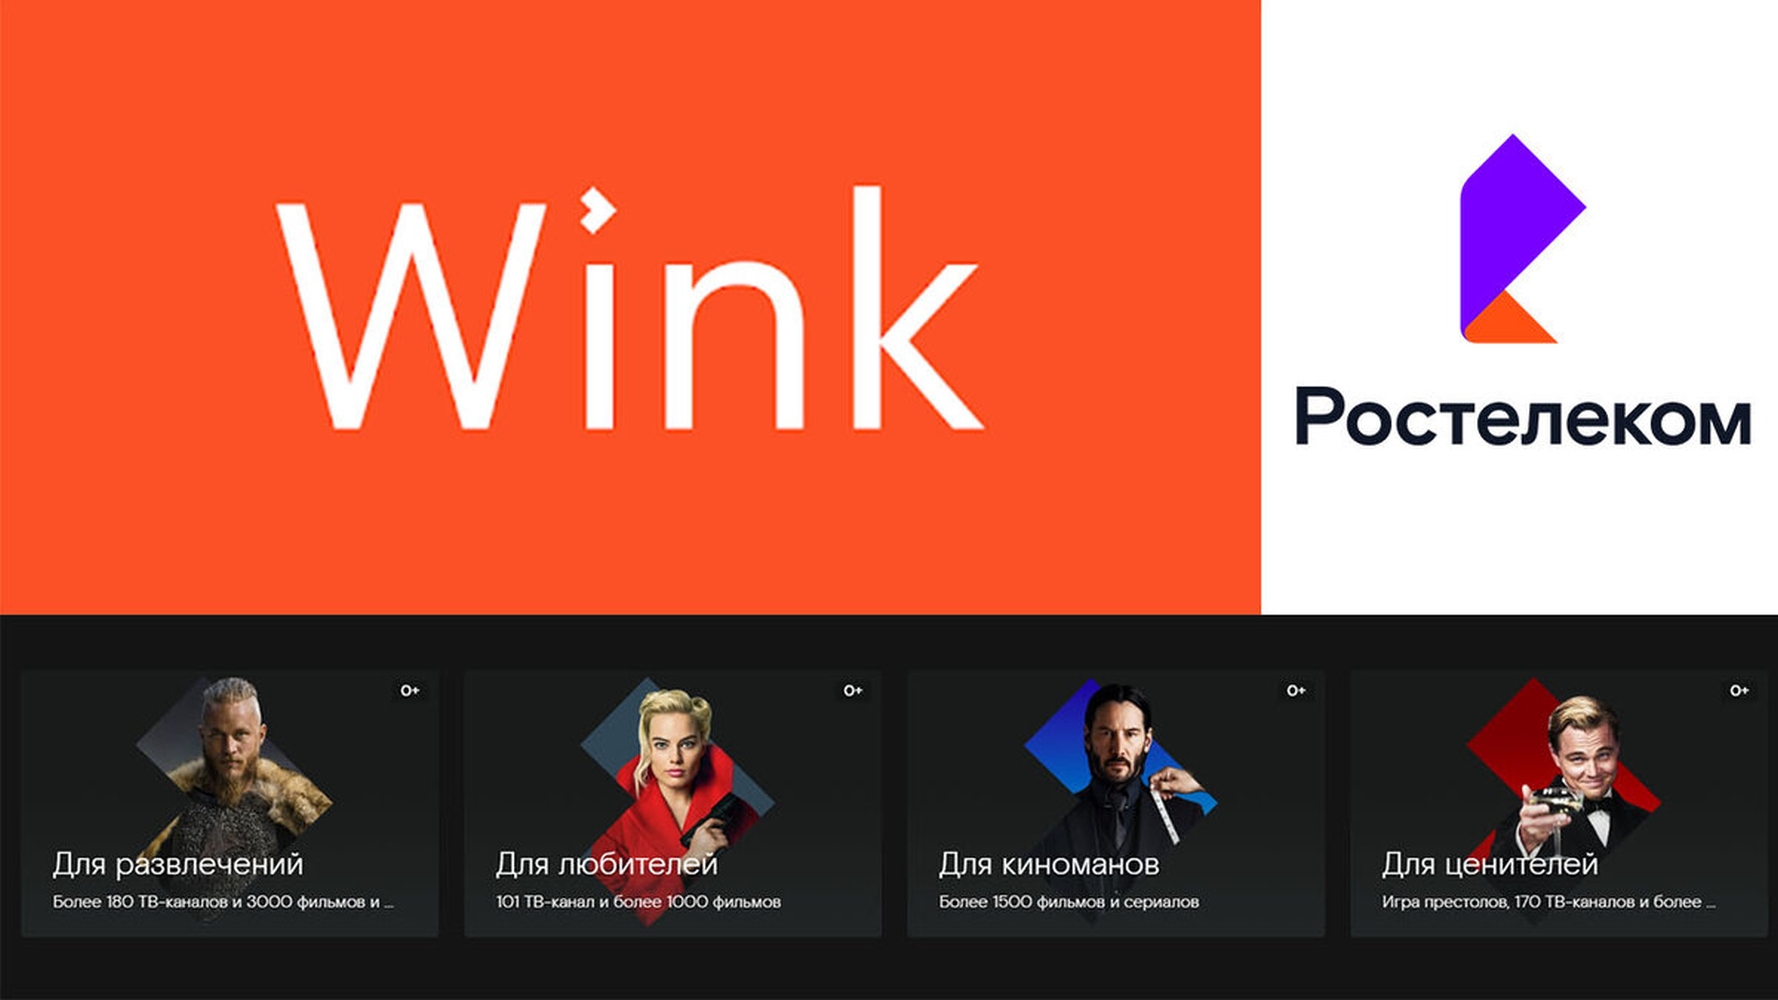 Ростелеком почему винк. Wink Ростелеком. Приложение wink. Wink Ростелеком логотип.